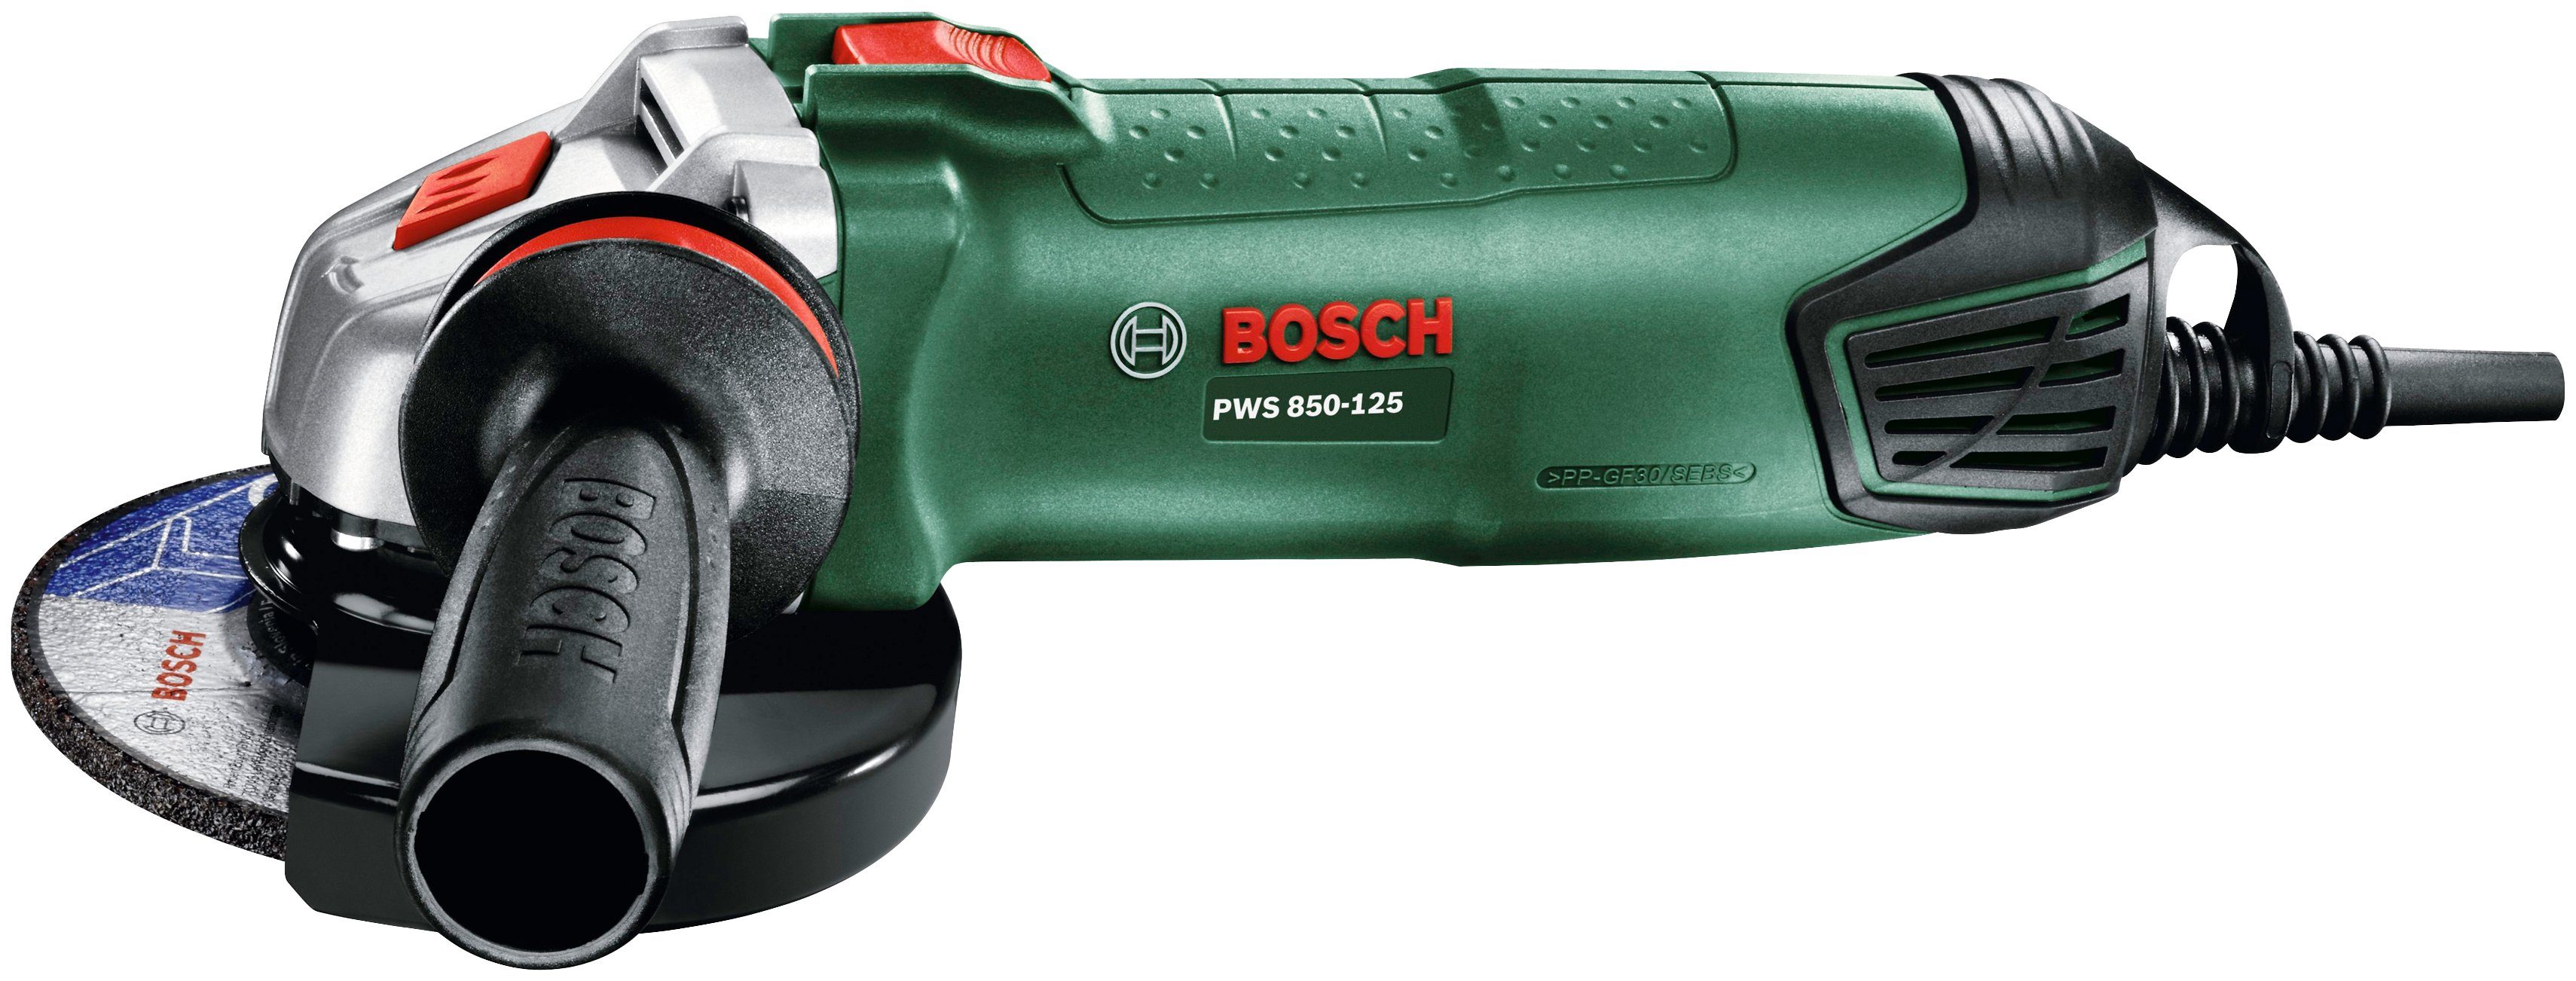 Bosch Home Diamanttrennscheibe mit Garden 850-125, Winkelschleifer PWS &